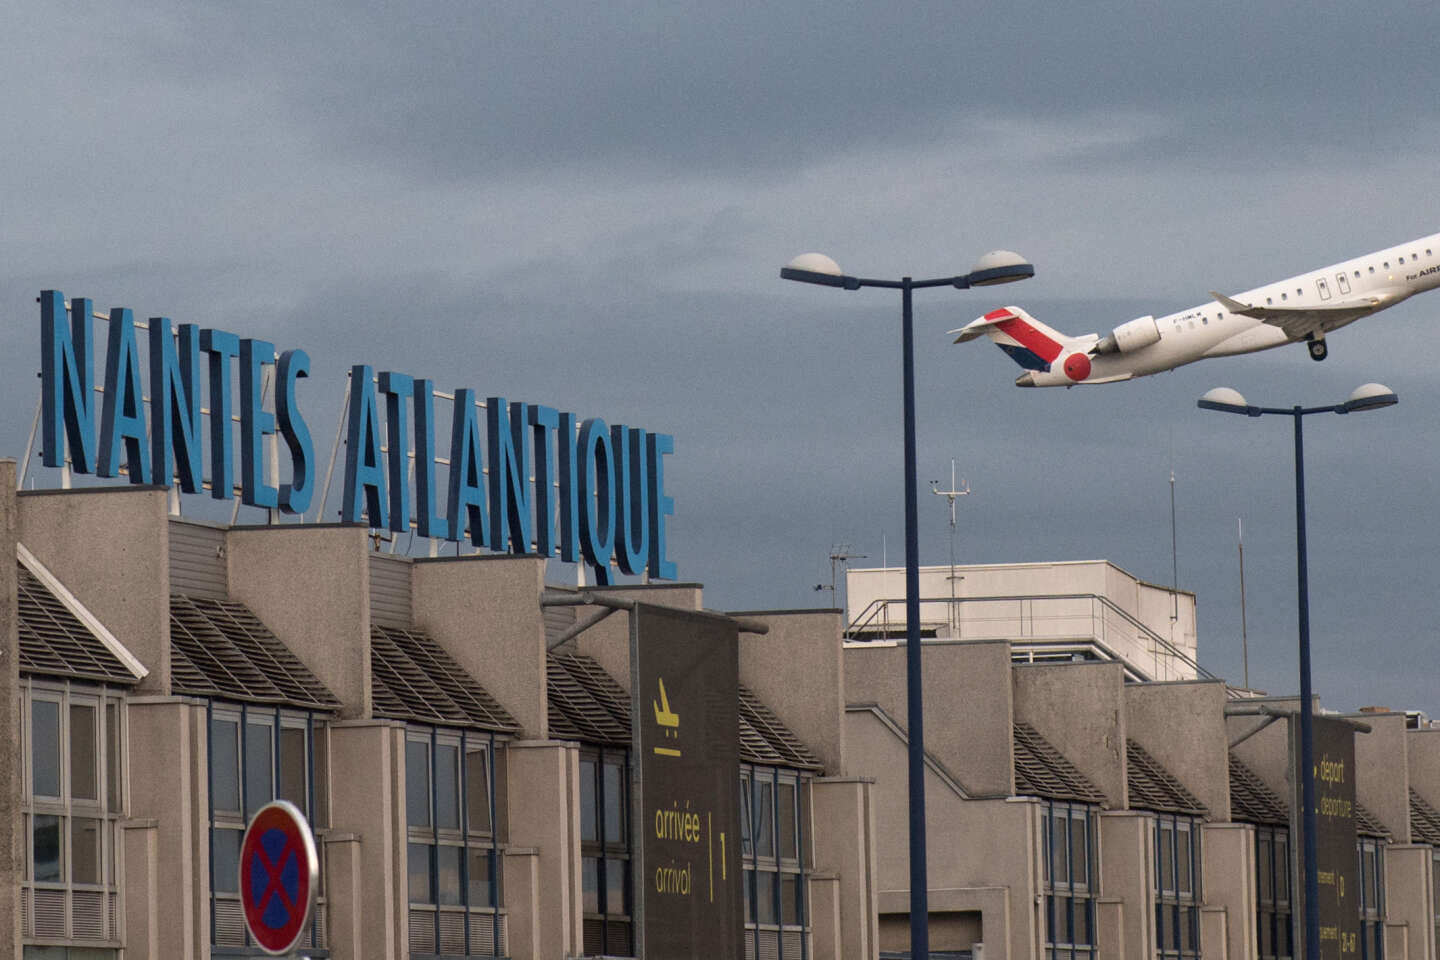 Réaménagement de l’aéroport de Nantes Atlantique : le dossier repart à zéro